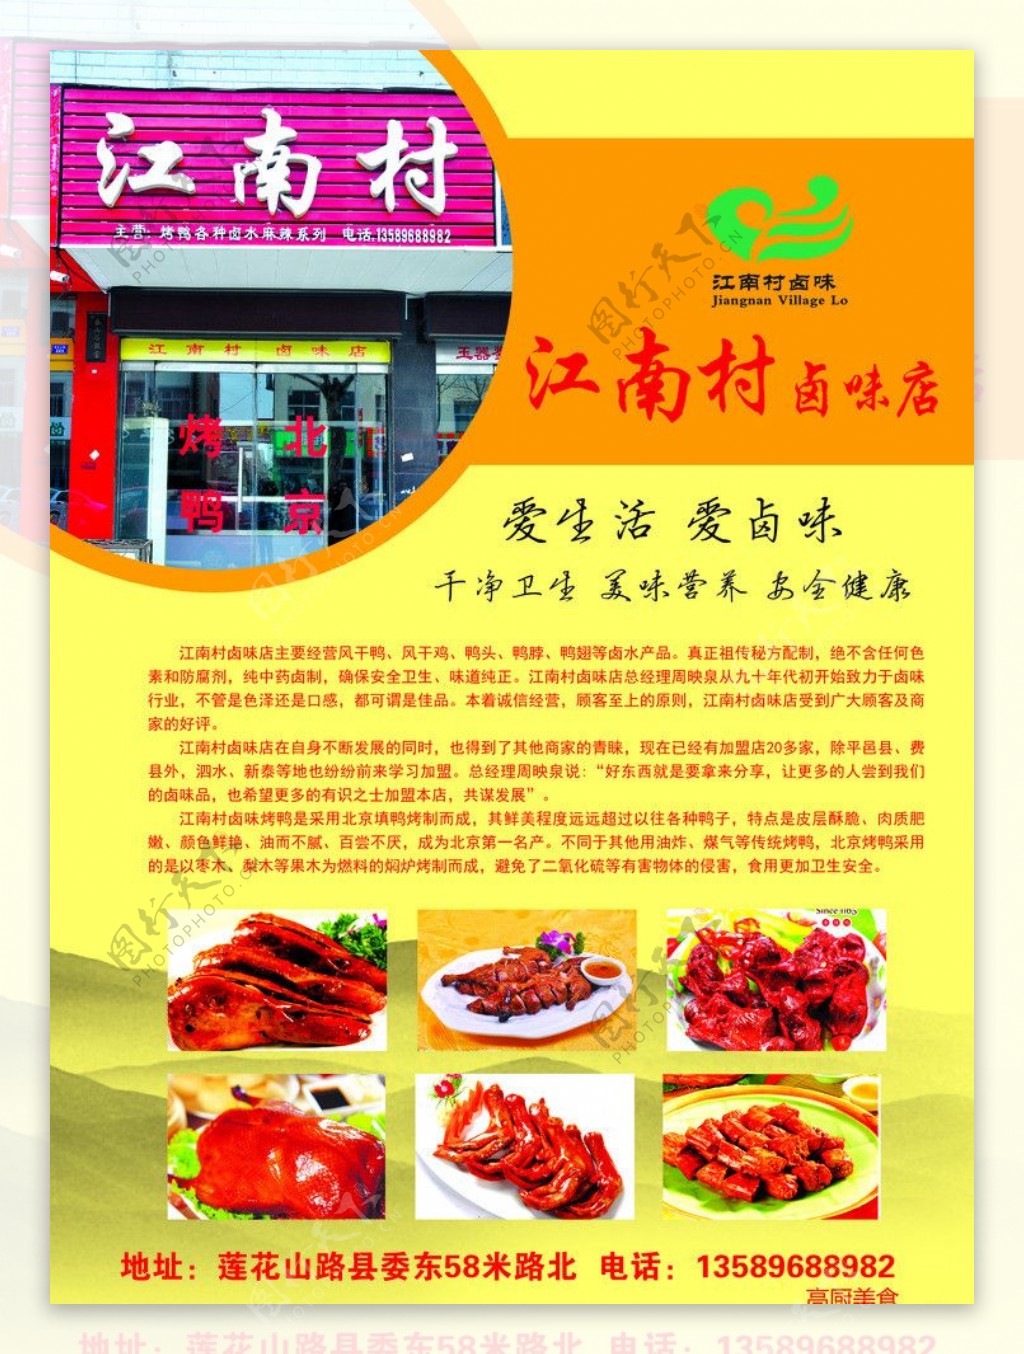 江南村烤鸭店图片